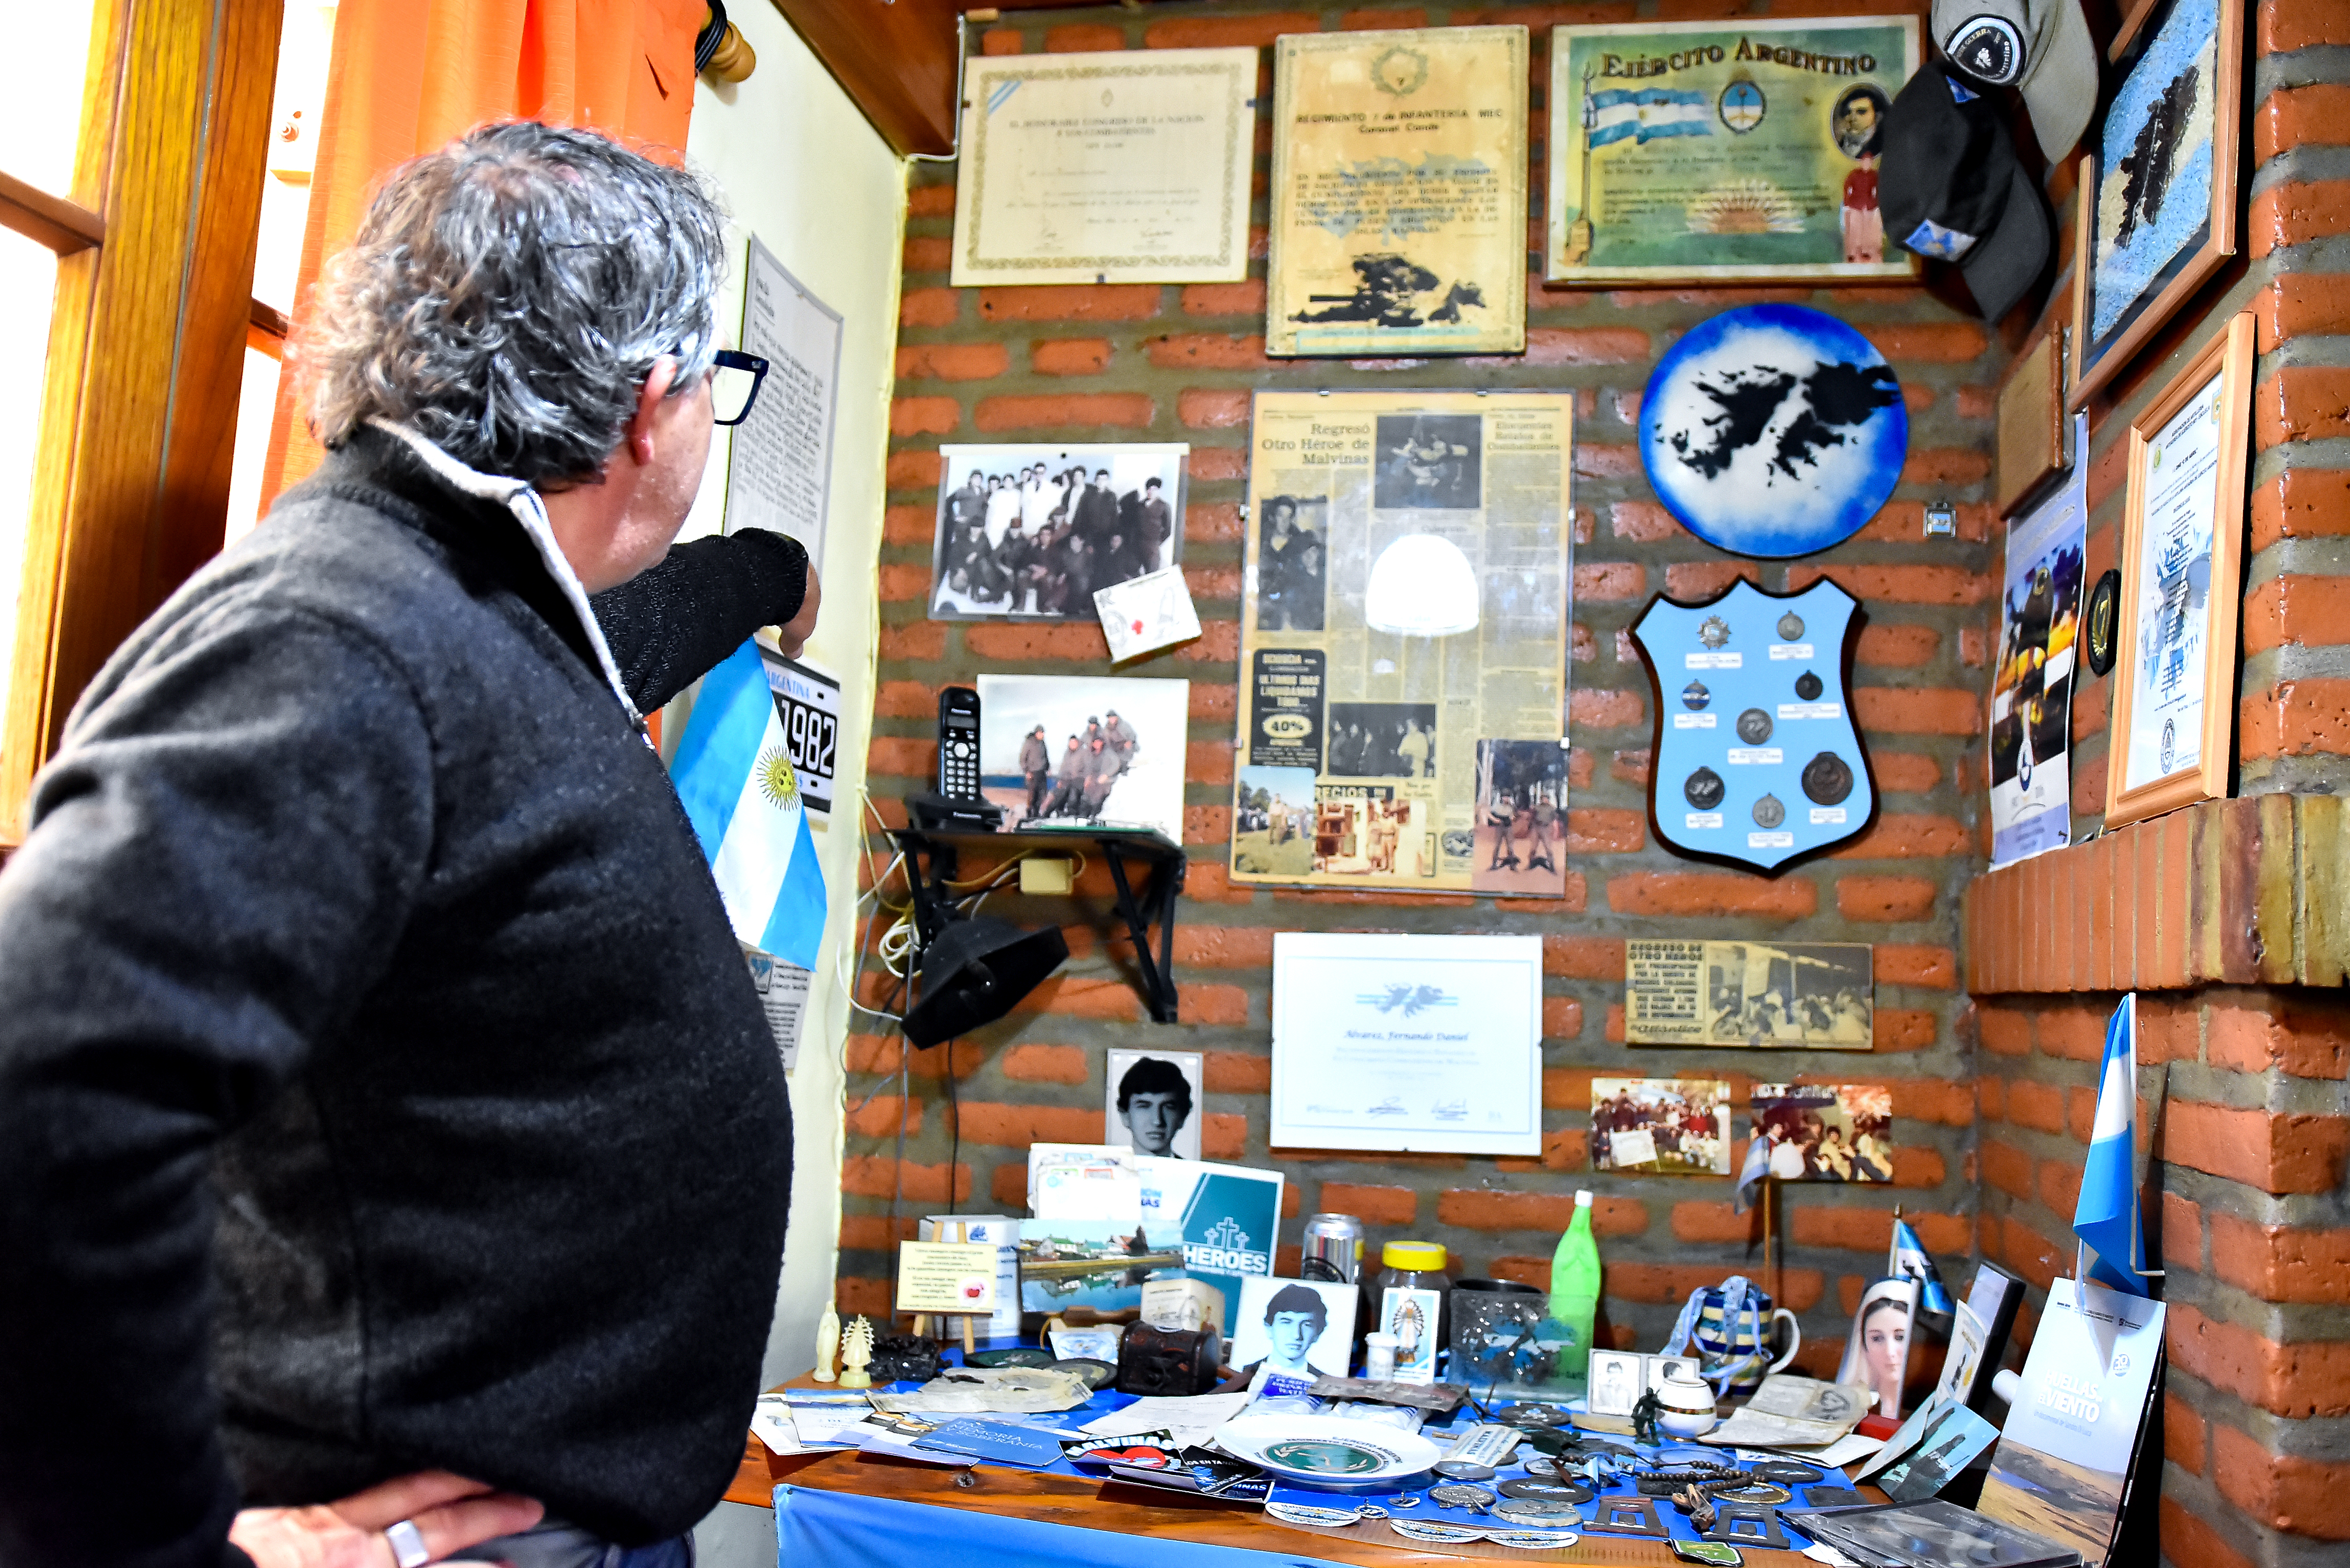 El presidente del Centro de Ex Soldados Combatientes conserva fotos, cartas, documentación y hasta tierra de Malvinas en su "mini museo" personal.